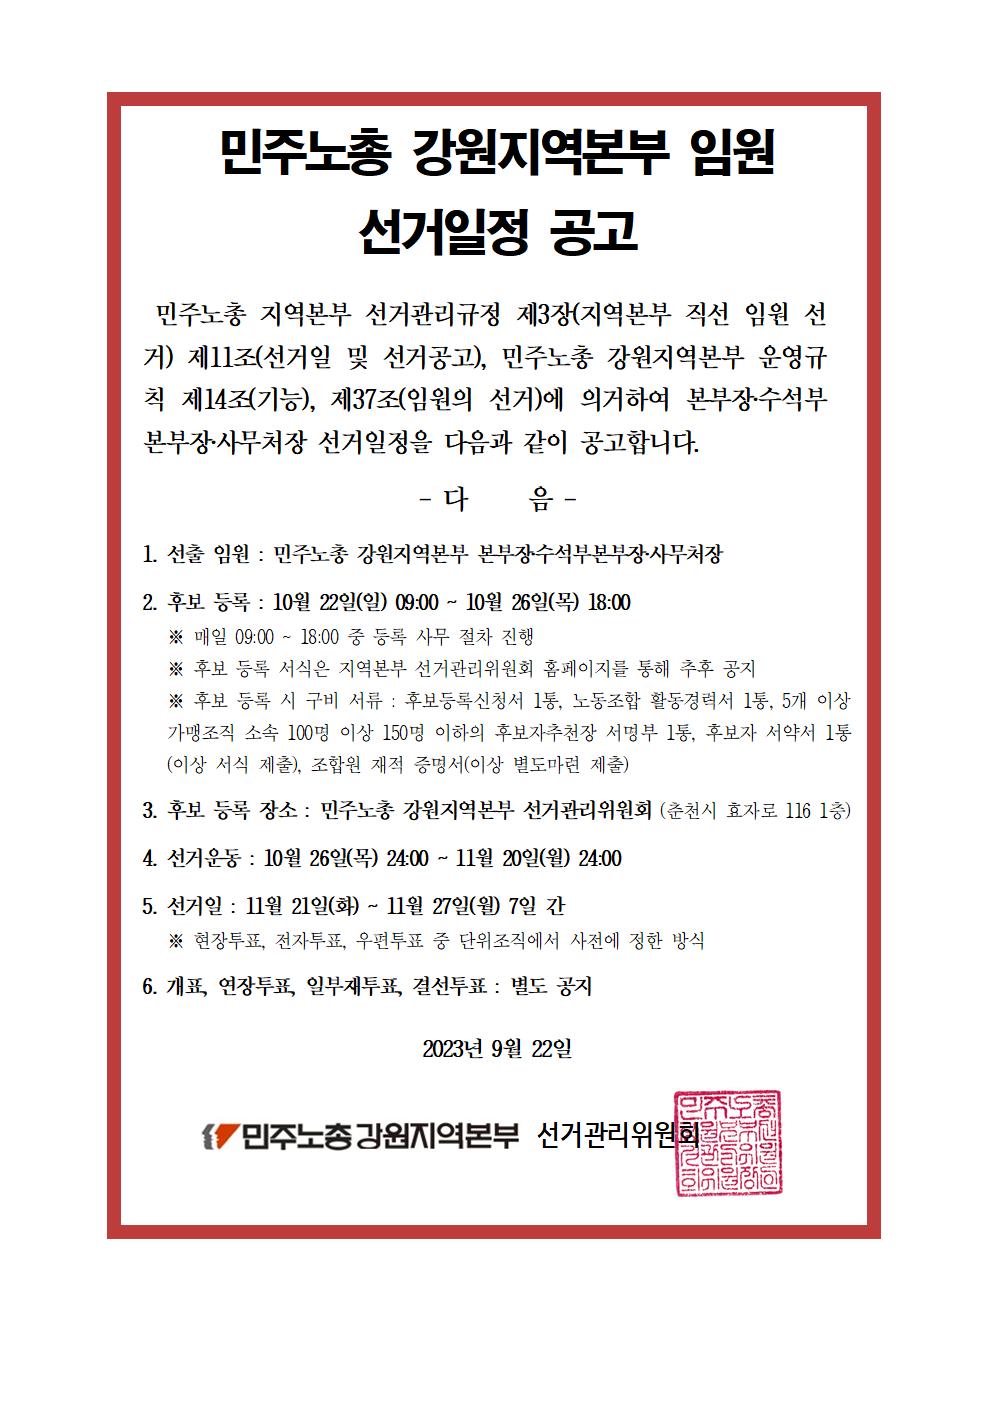 [공고] 민주노총 강원지역본부 임원 선거일정 공고